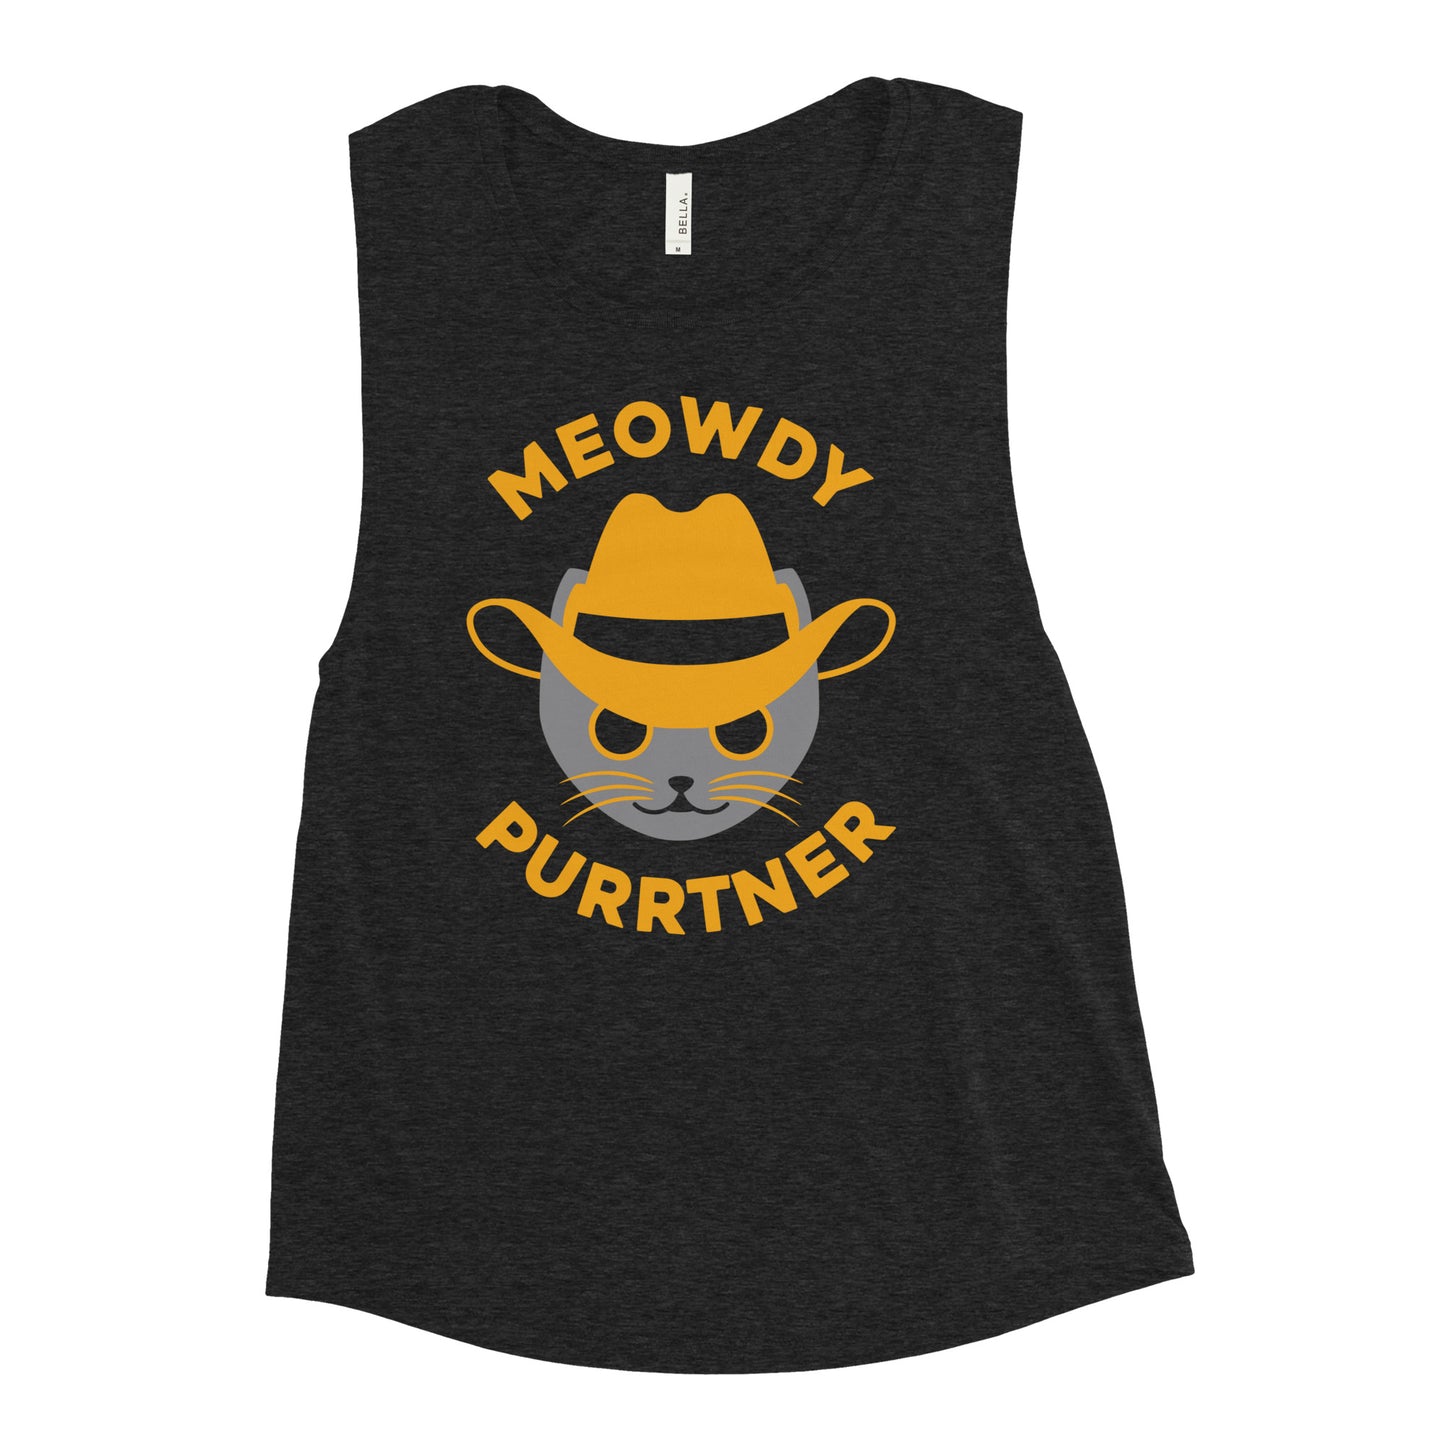 Meowdy Purrtner Women's Muscle Tank